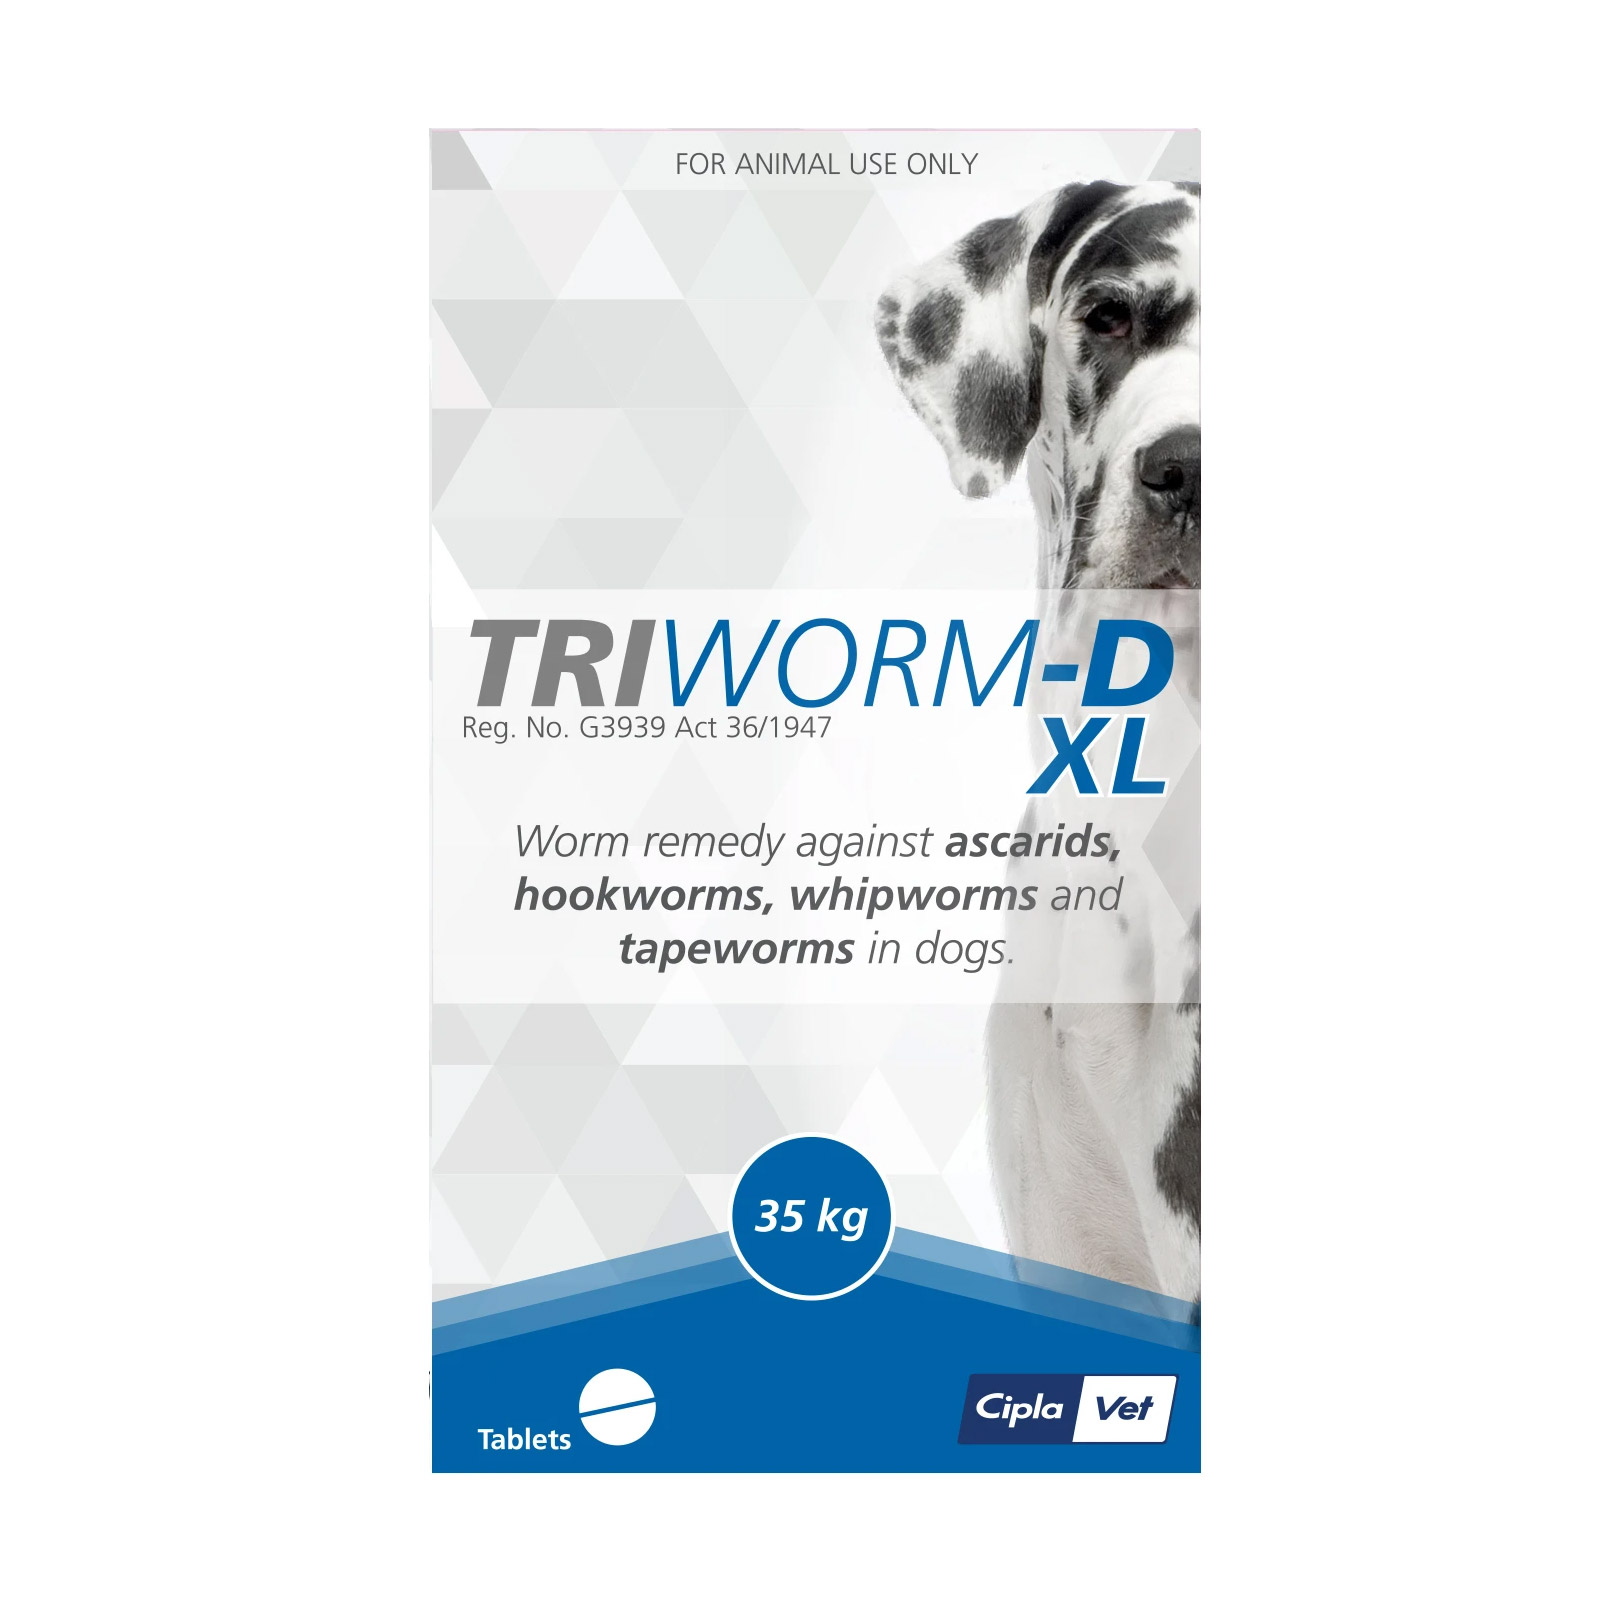 Triworm-D Dewormer For Large Dogs 35kg 4 Tablets